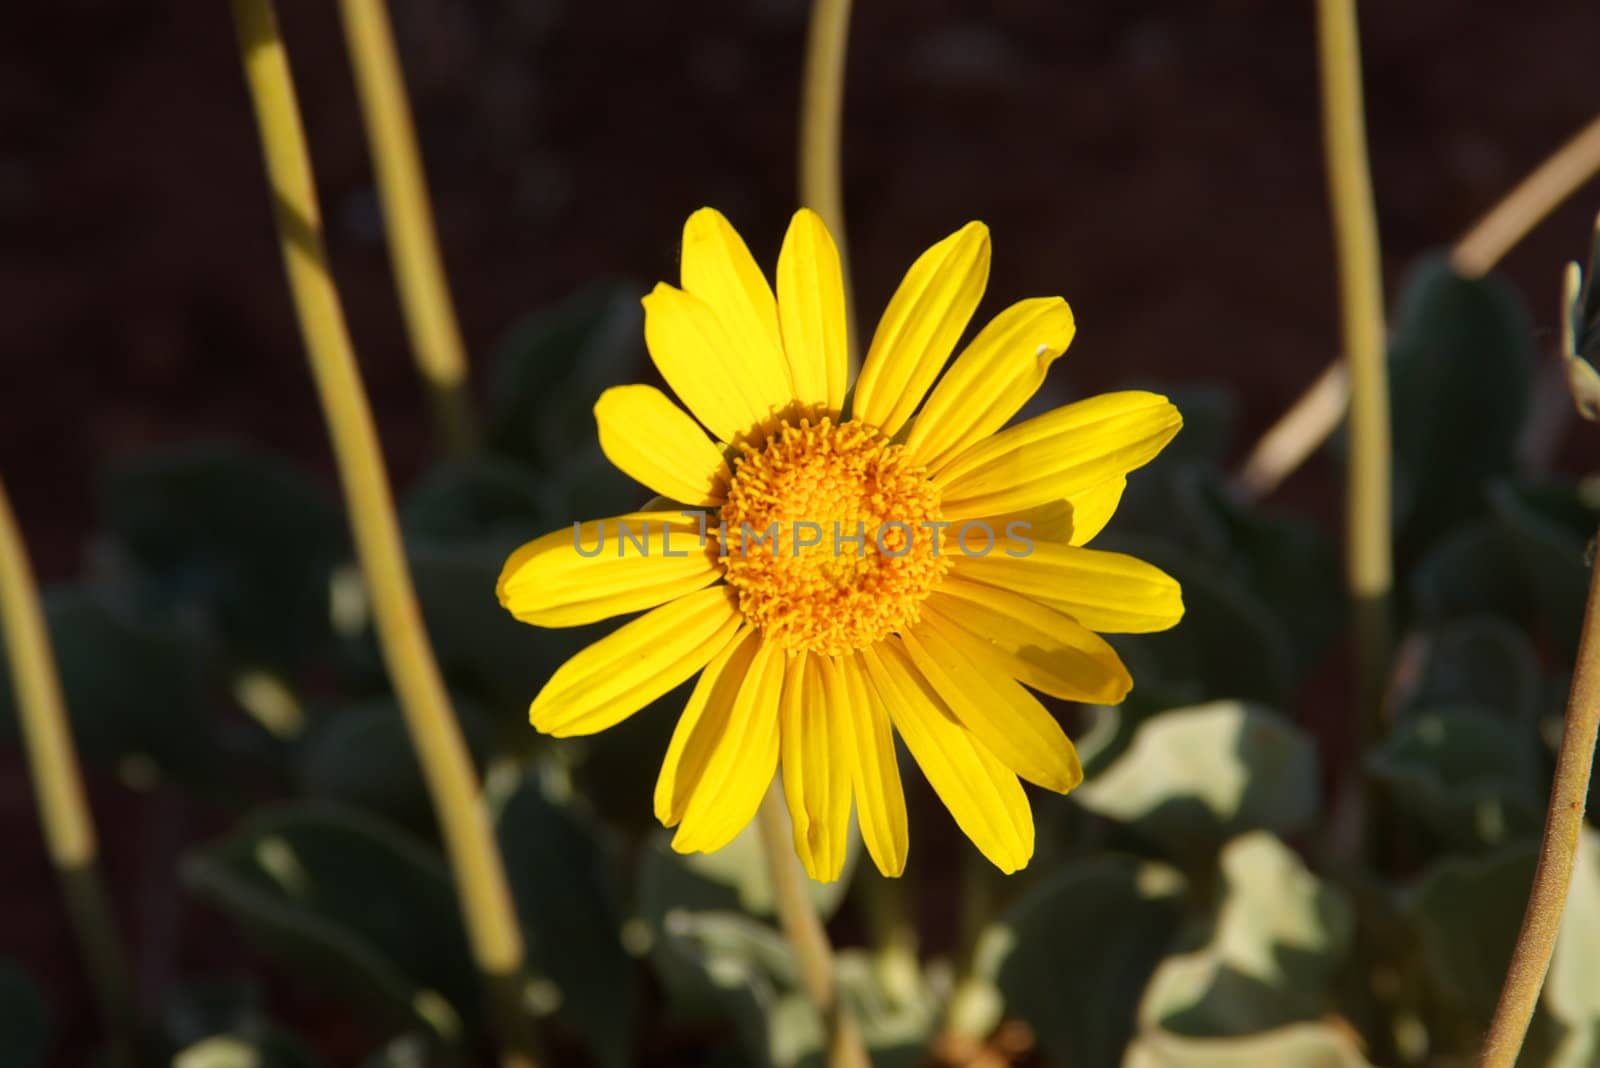 Wild Sunflower A by photocdn39